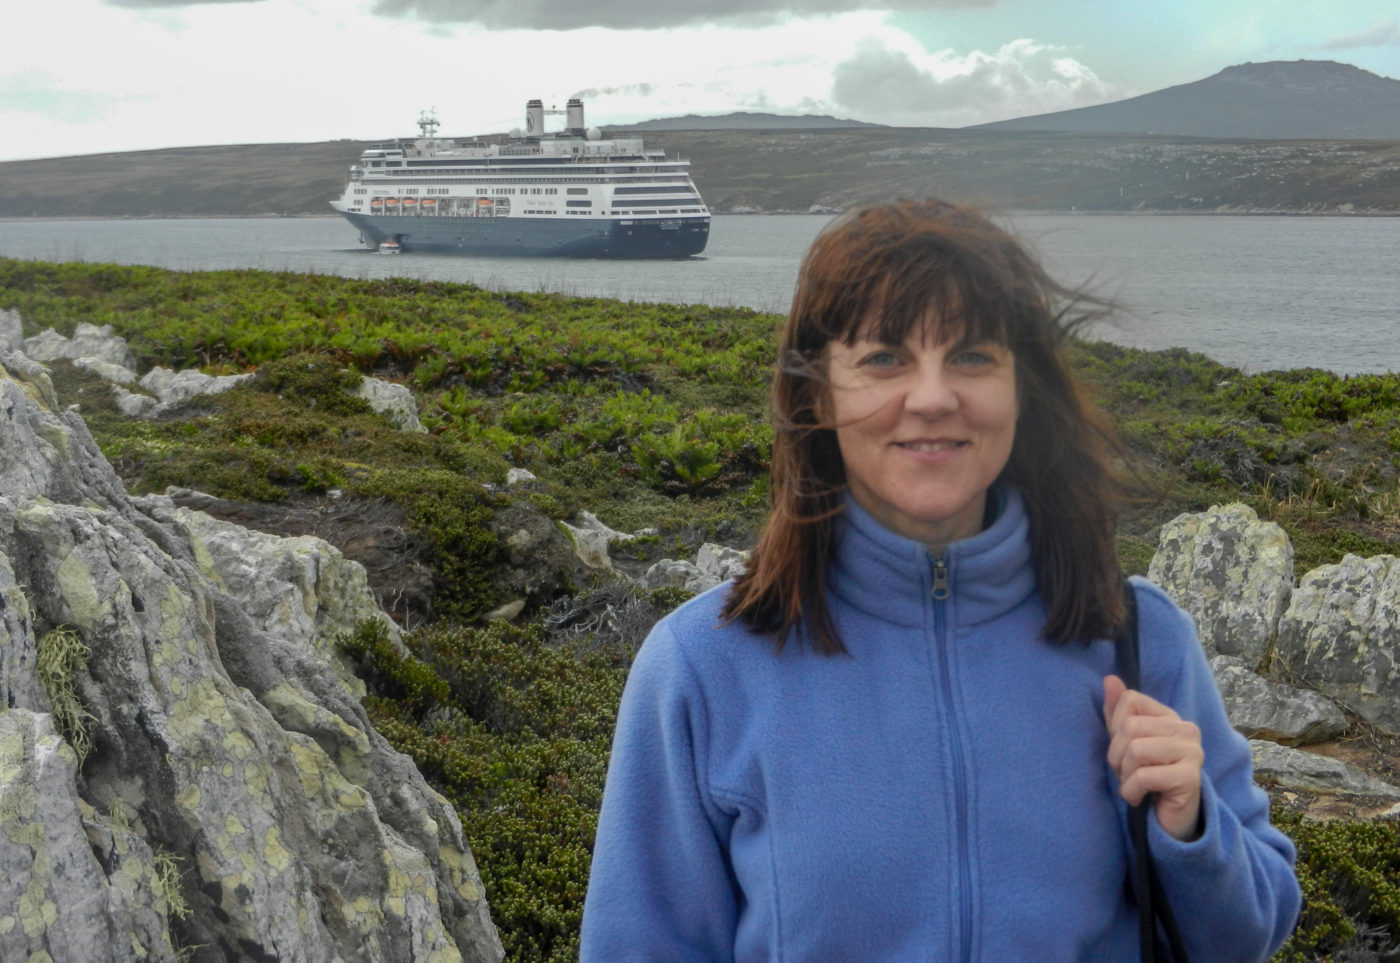 Port Stanley, Falkland Islands – Stunning Landscapes, Penguins & Shipwrecks